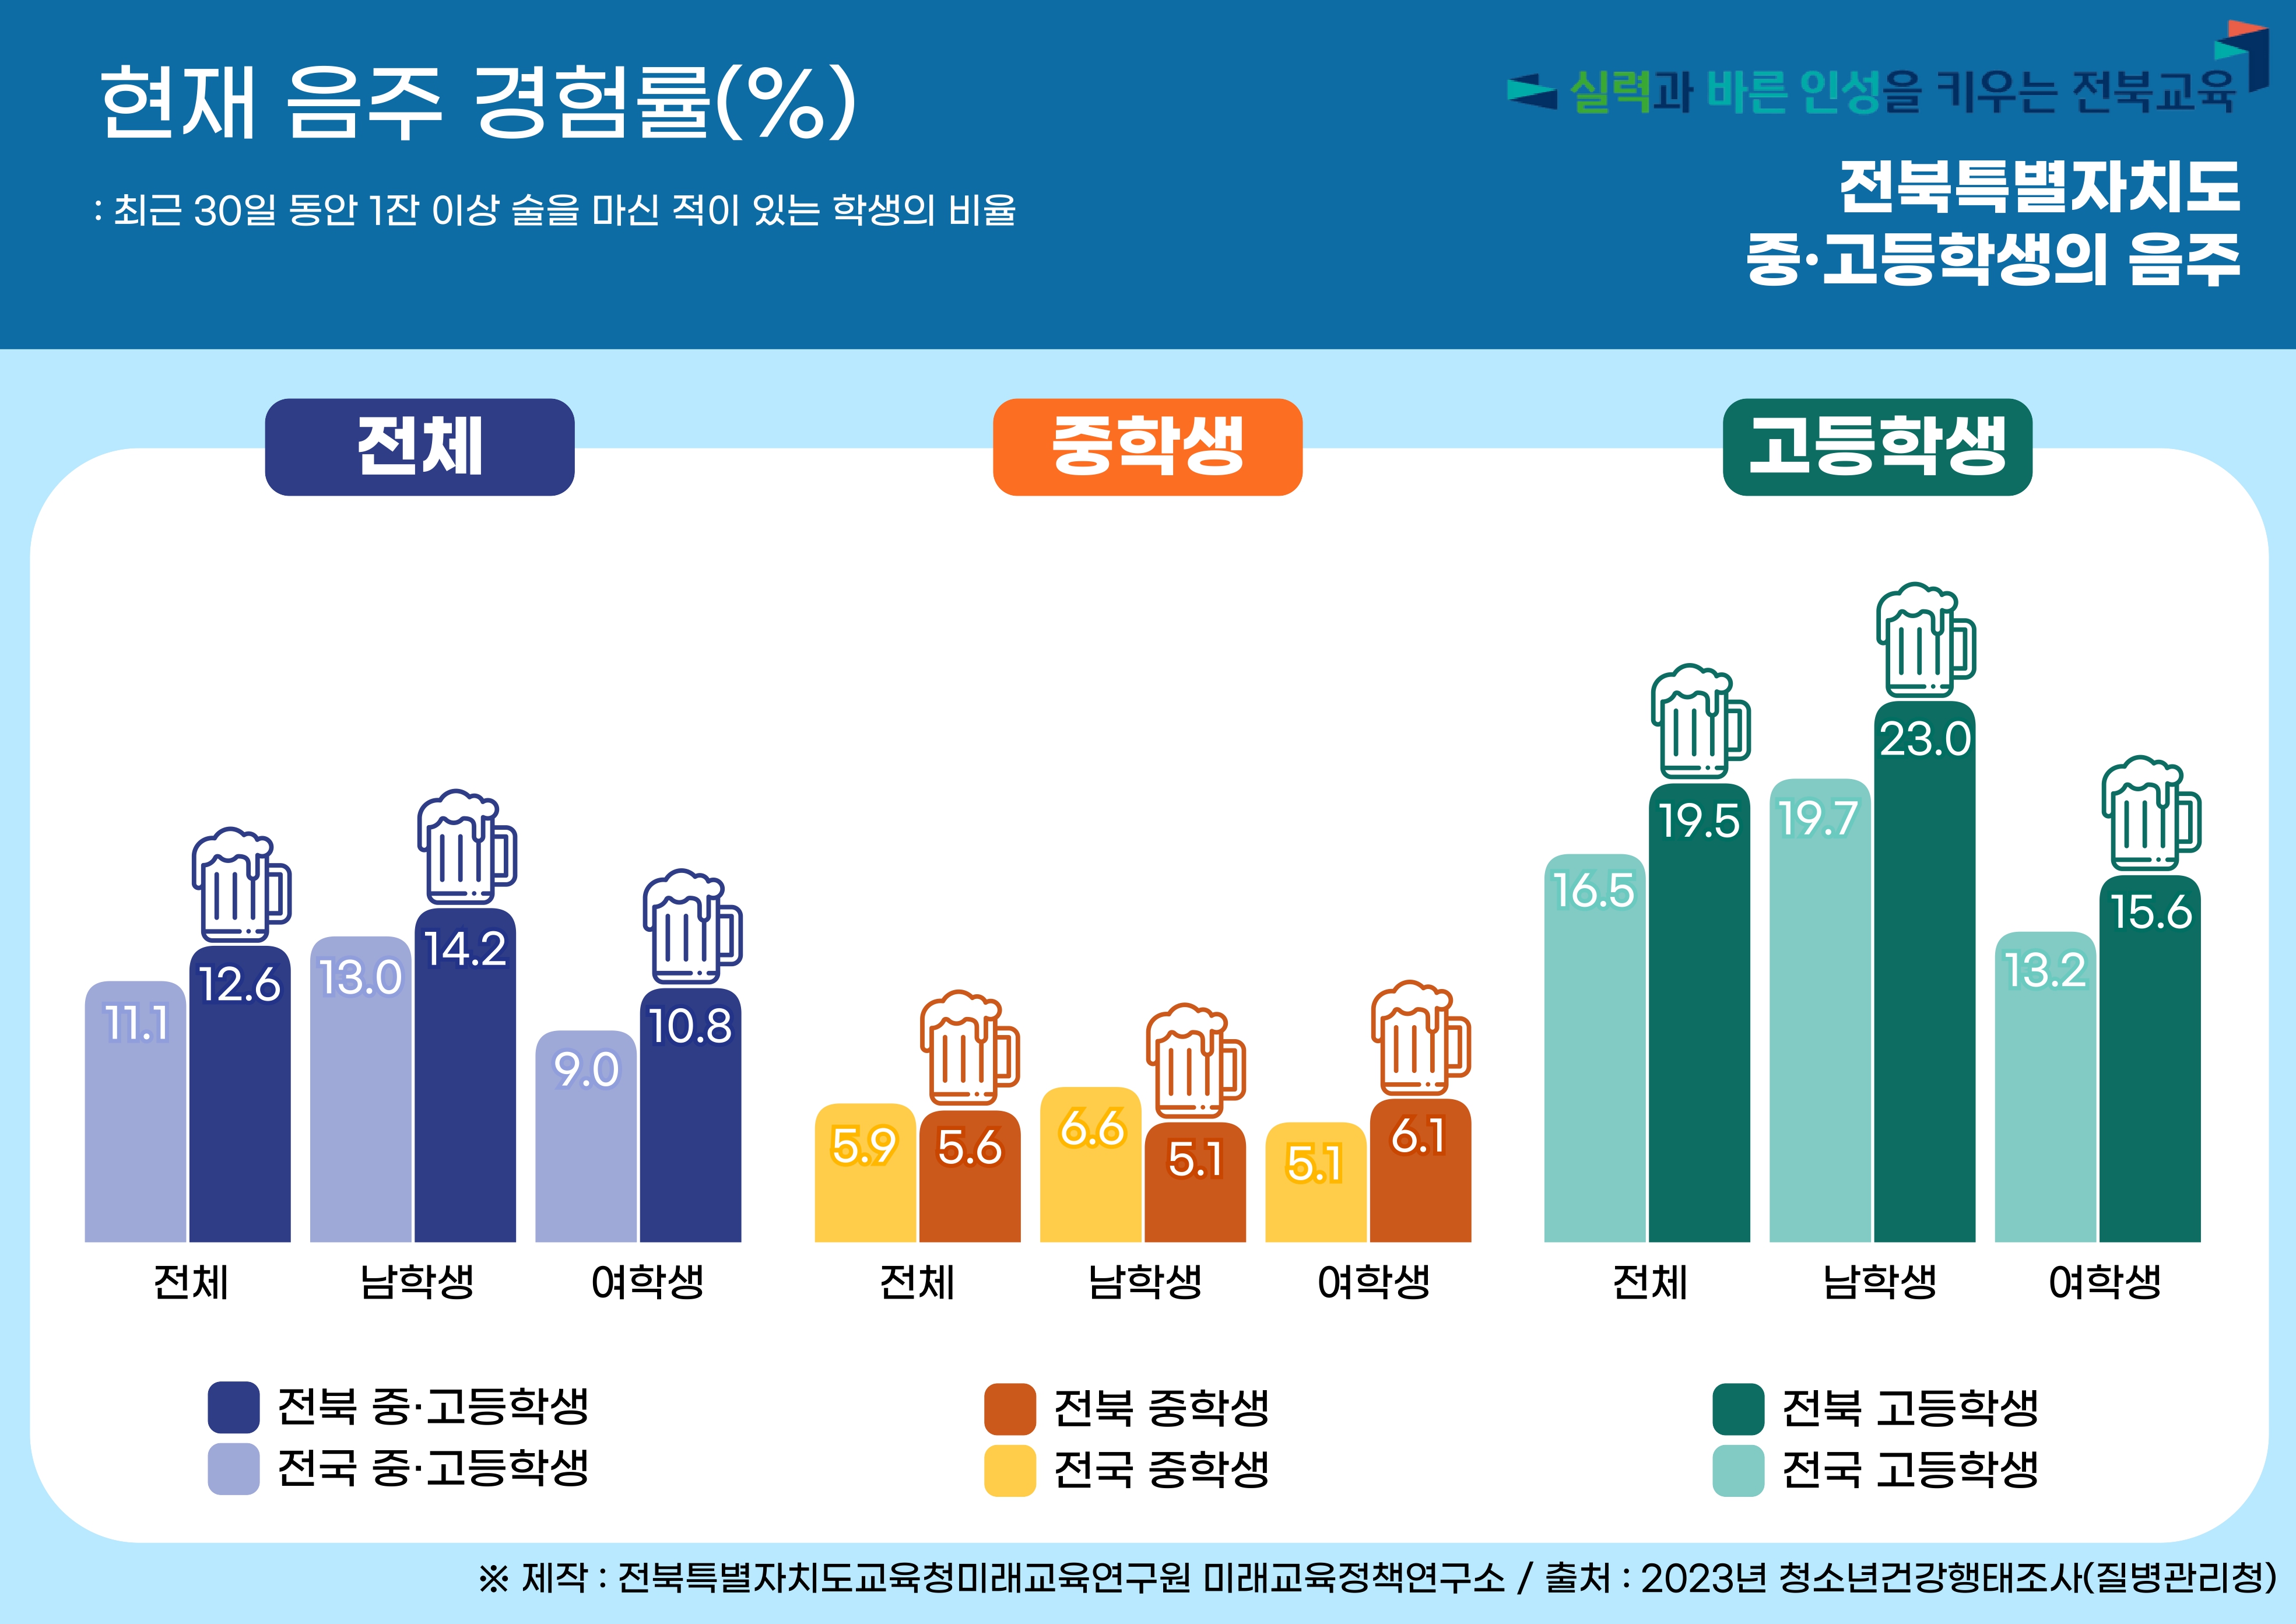 2023년 전북특별자치도 청소년 건강행태 :  음주